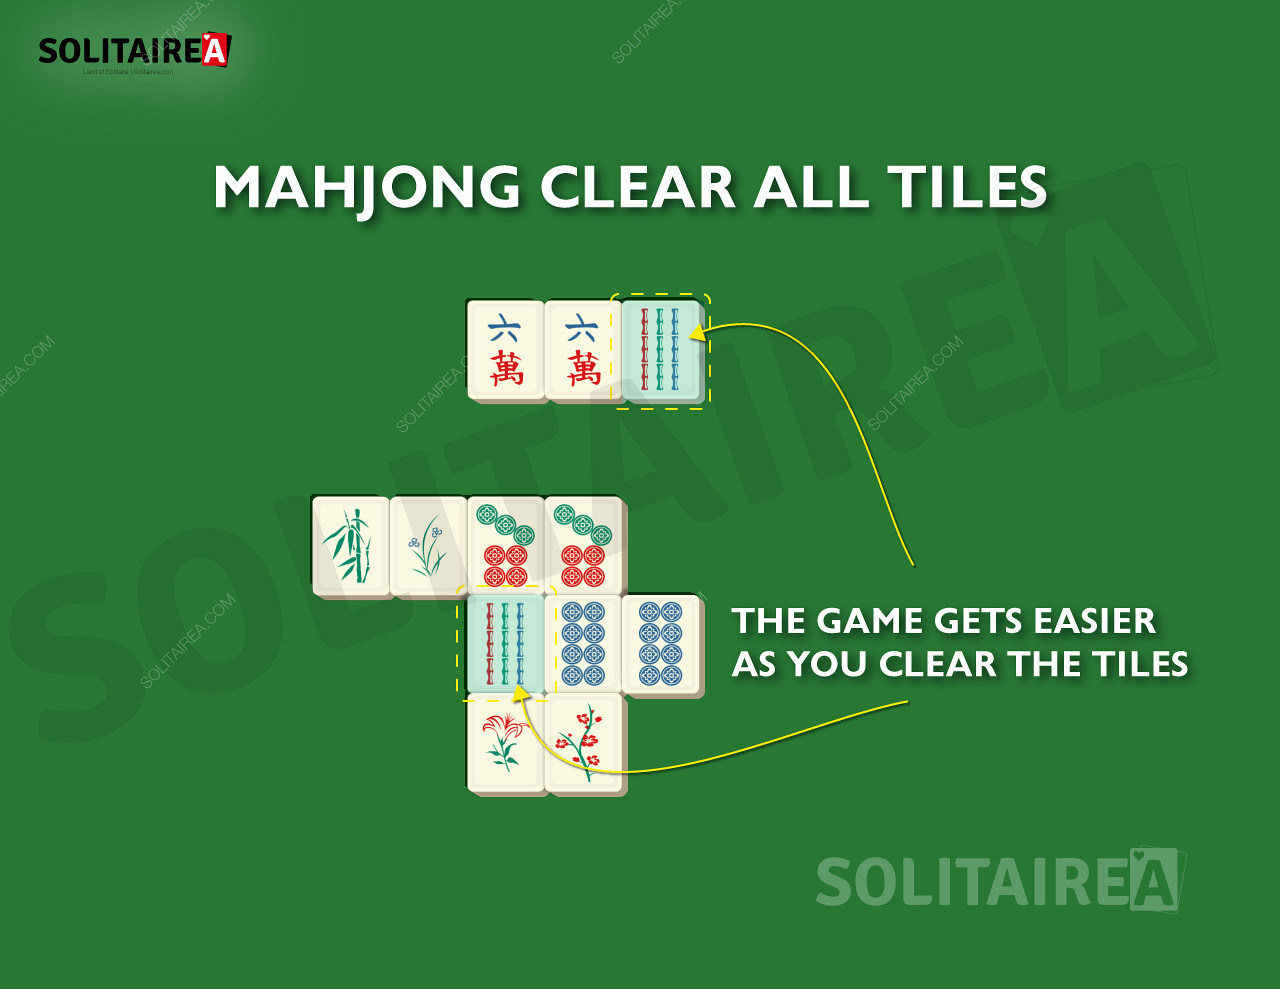 Man mano che si avanza, le tessere da eliminare in Mahjong Solitaire sono sempre meno.